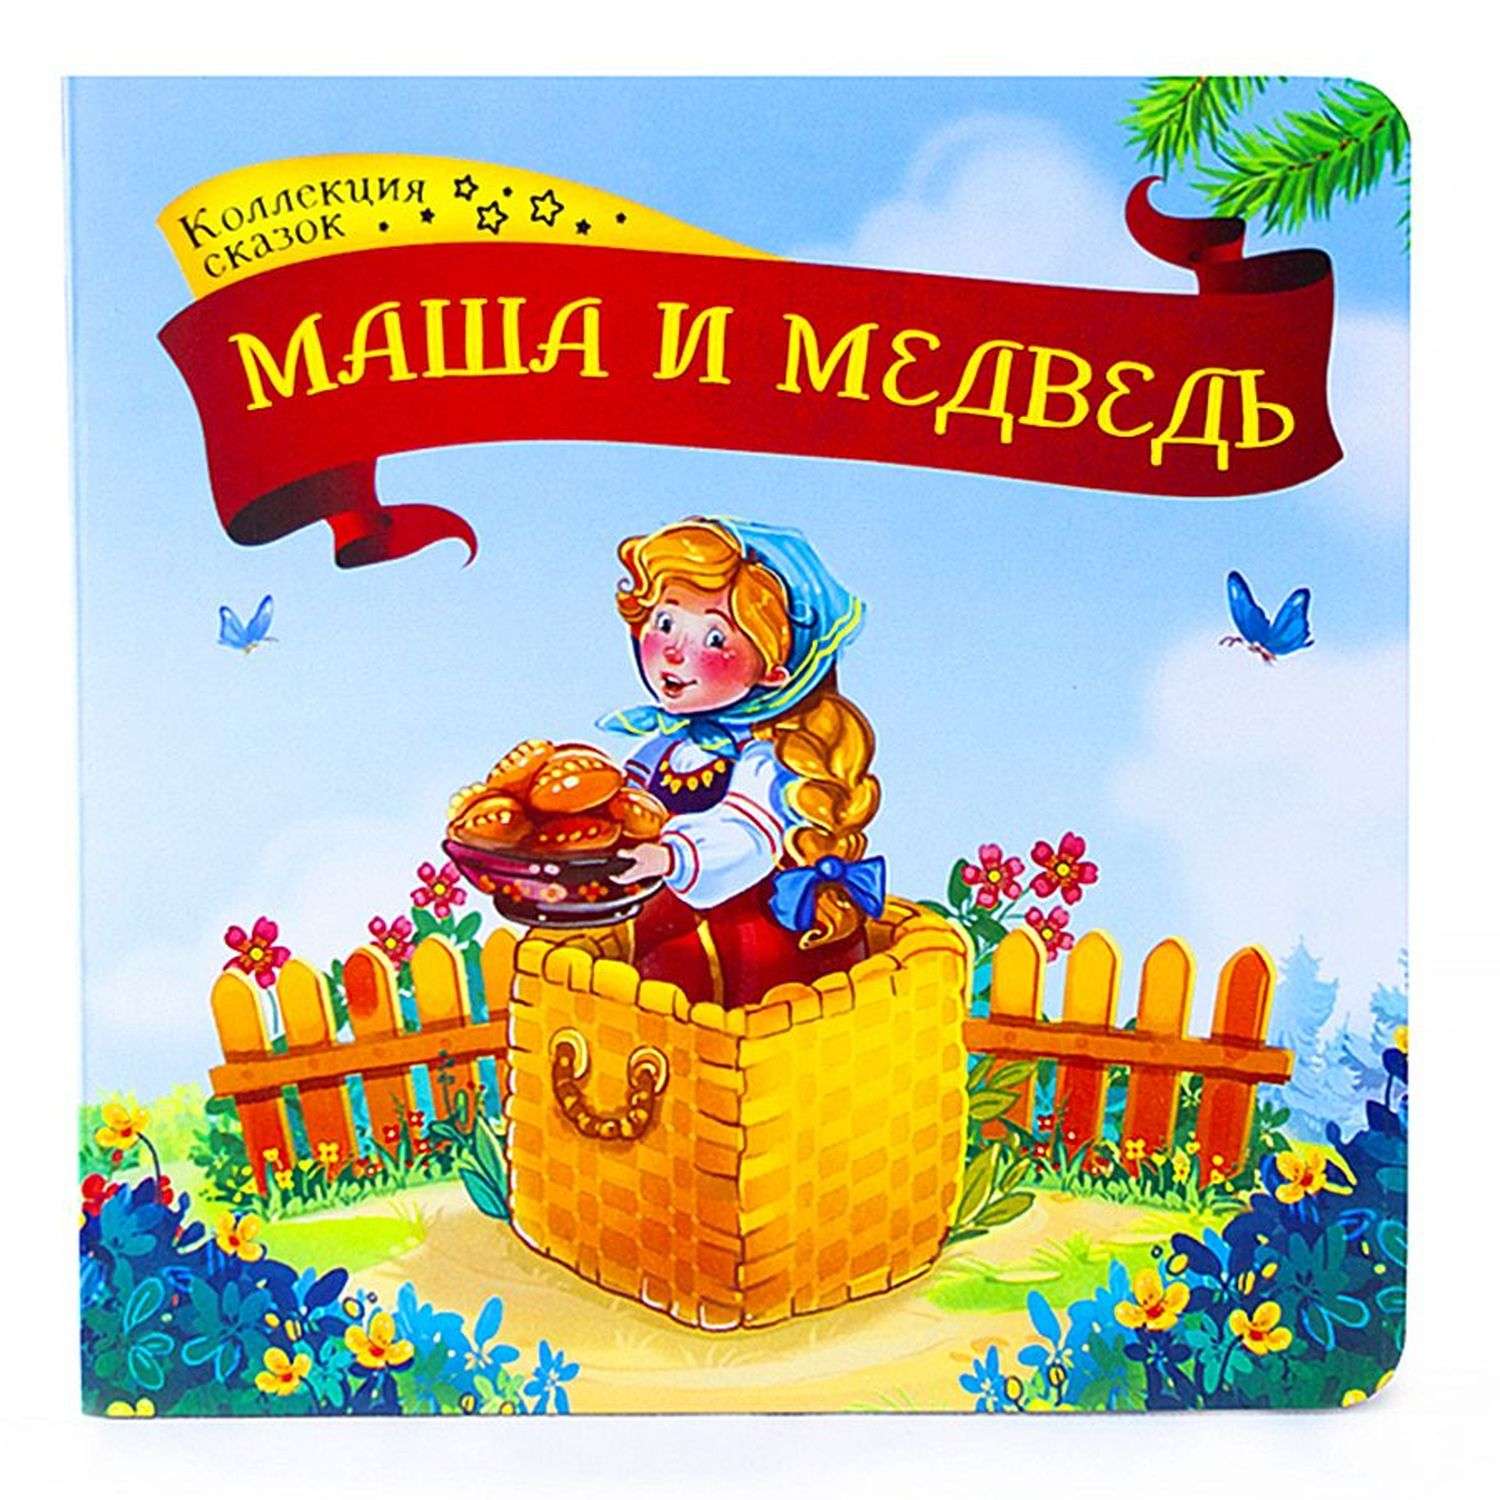 Книга Malamalama Коллекция сказок Маша и медведь - фото 1